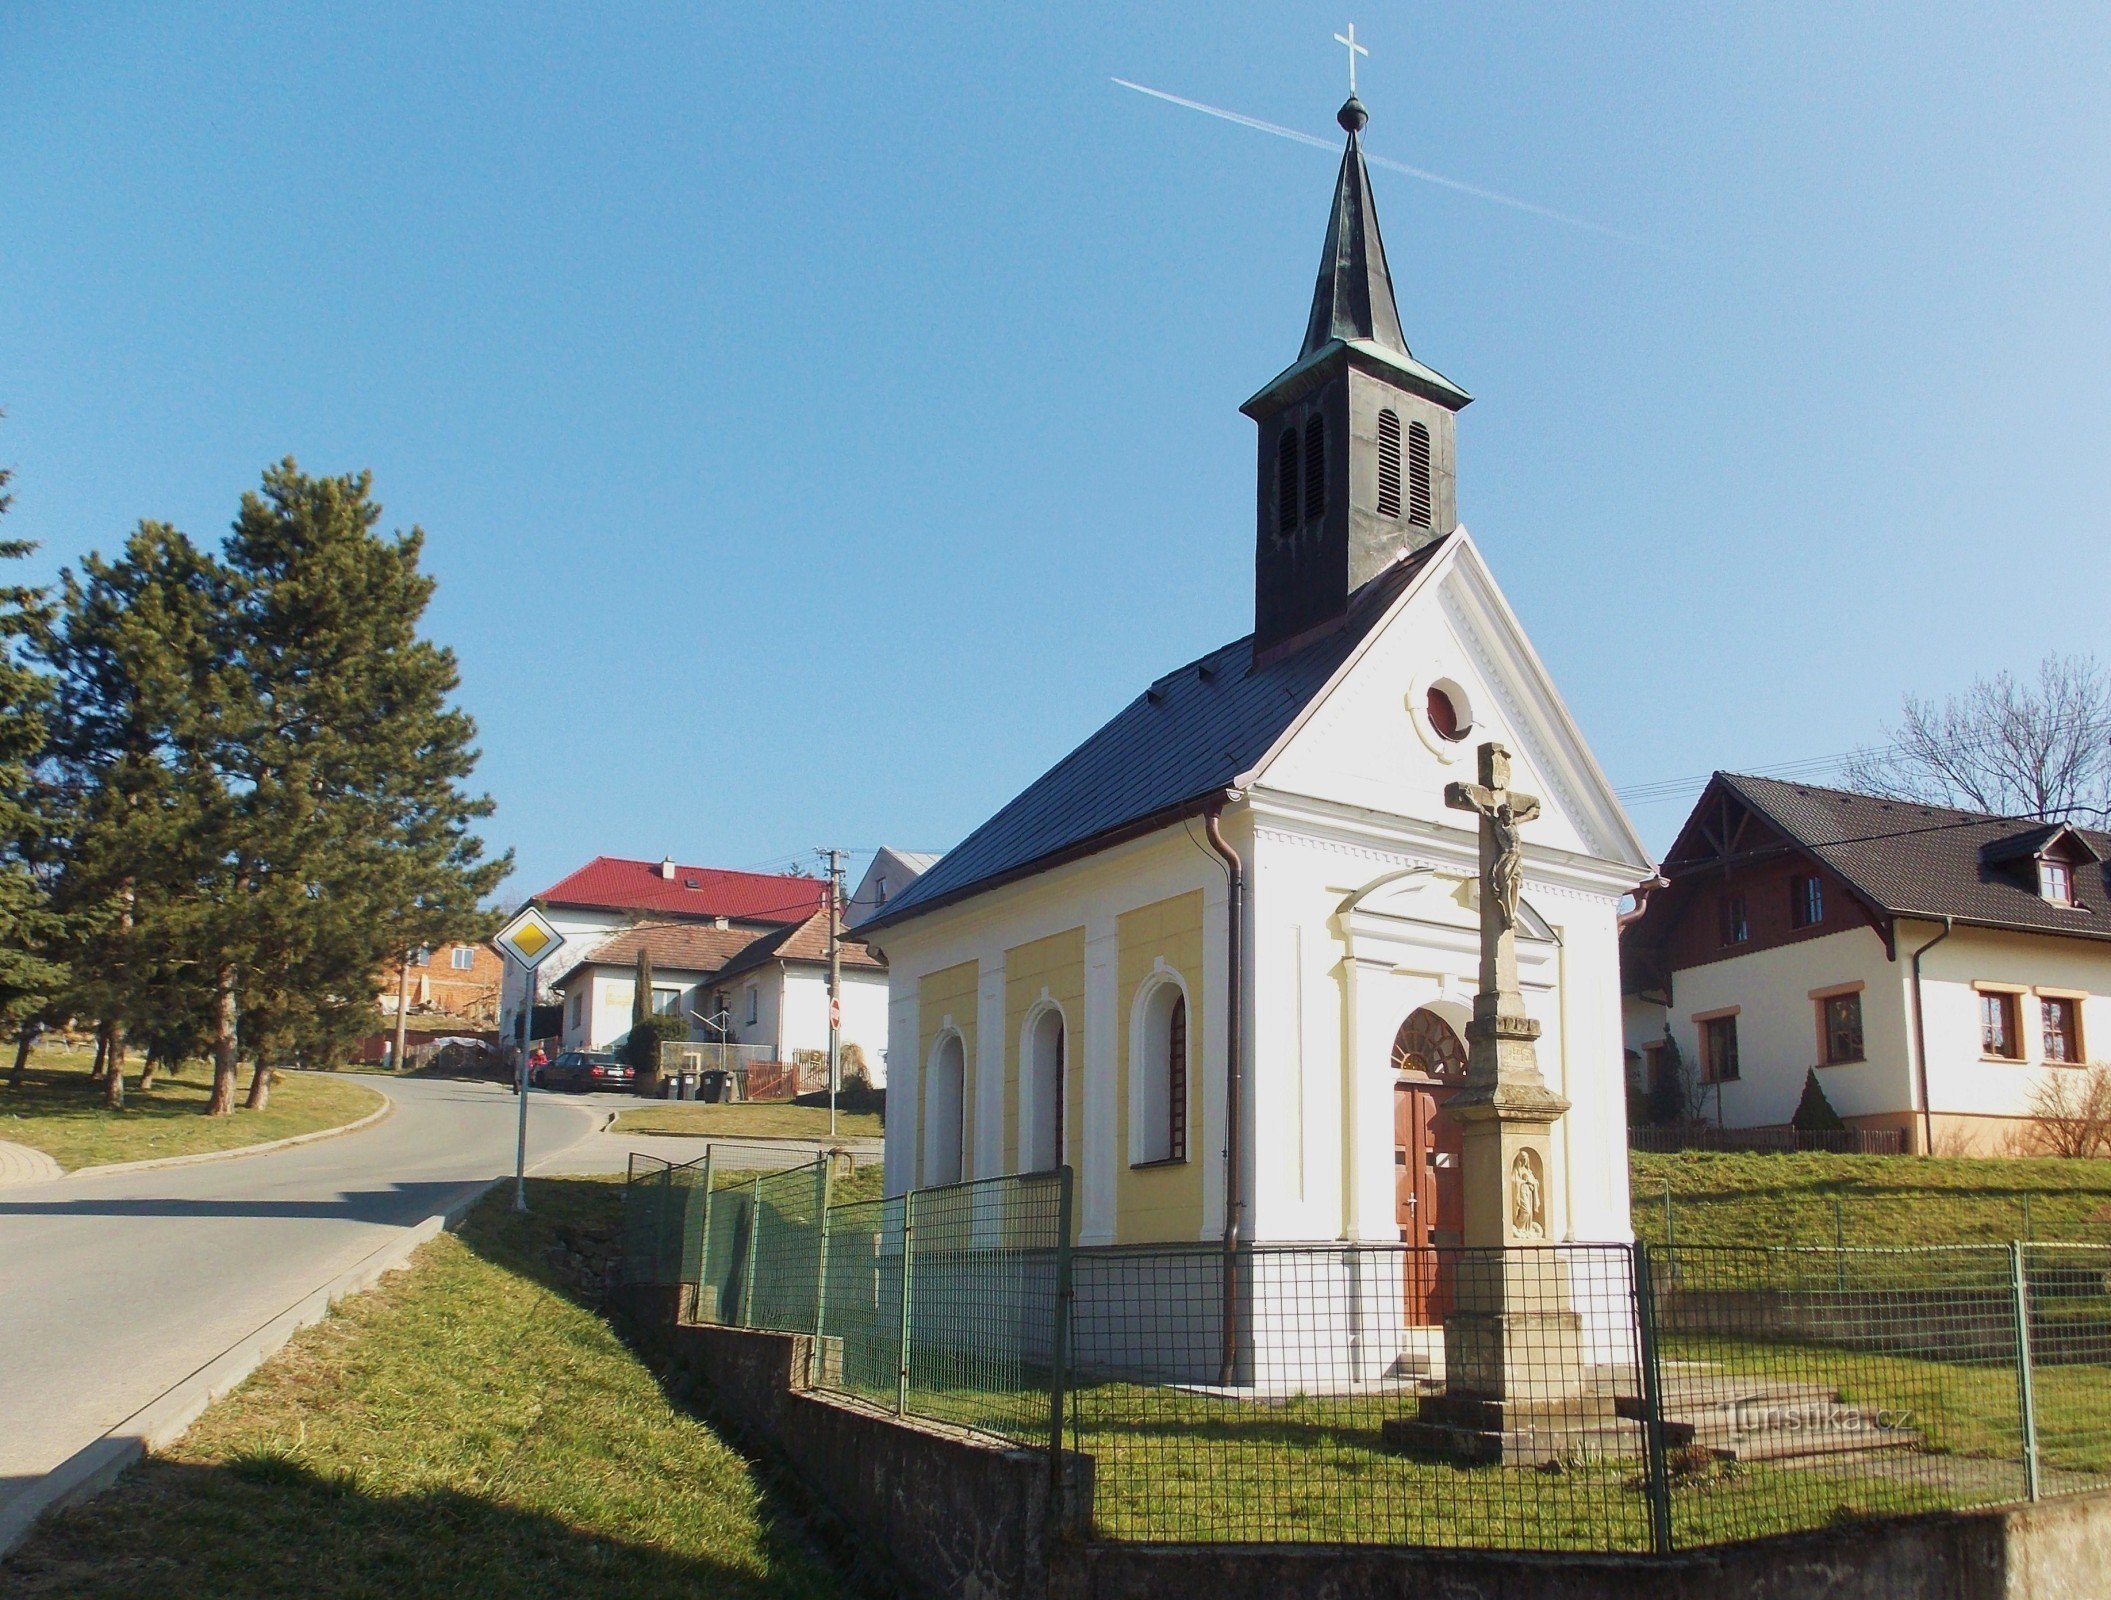 St. Martins kapell i Příluky nära Zlín